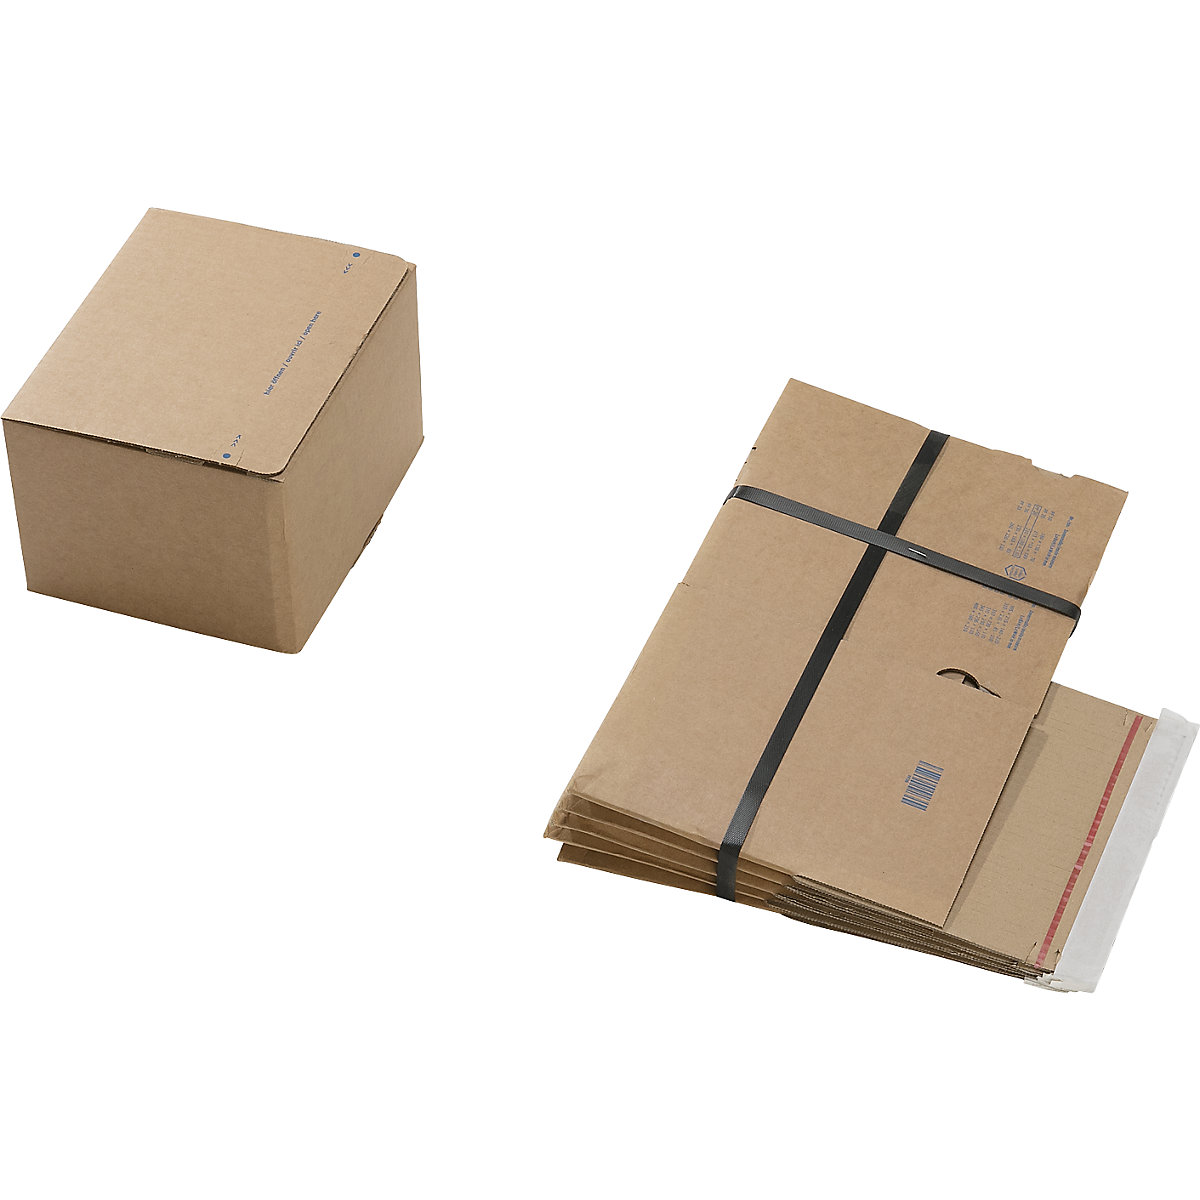 Cajas para envíos, con fondo preparado para montaje rápido y cierre autoadhesivo, dimensiones interiores L x A x H 210 x 180 x 130 mm, UE 100 unid.-4